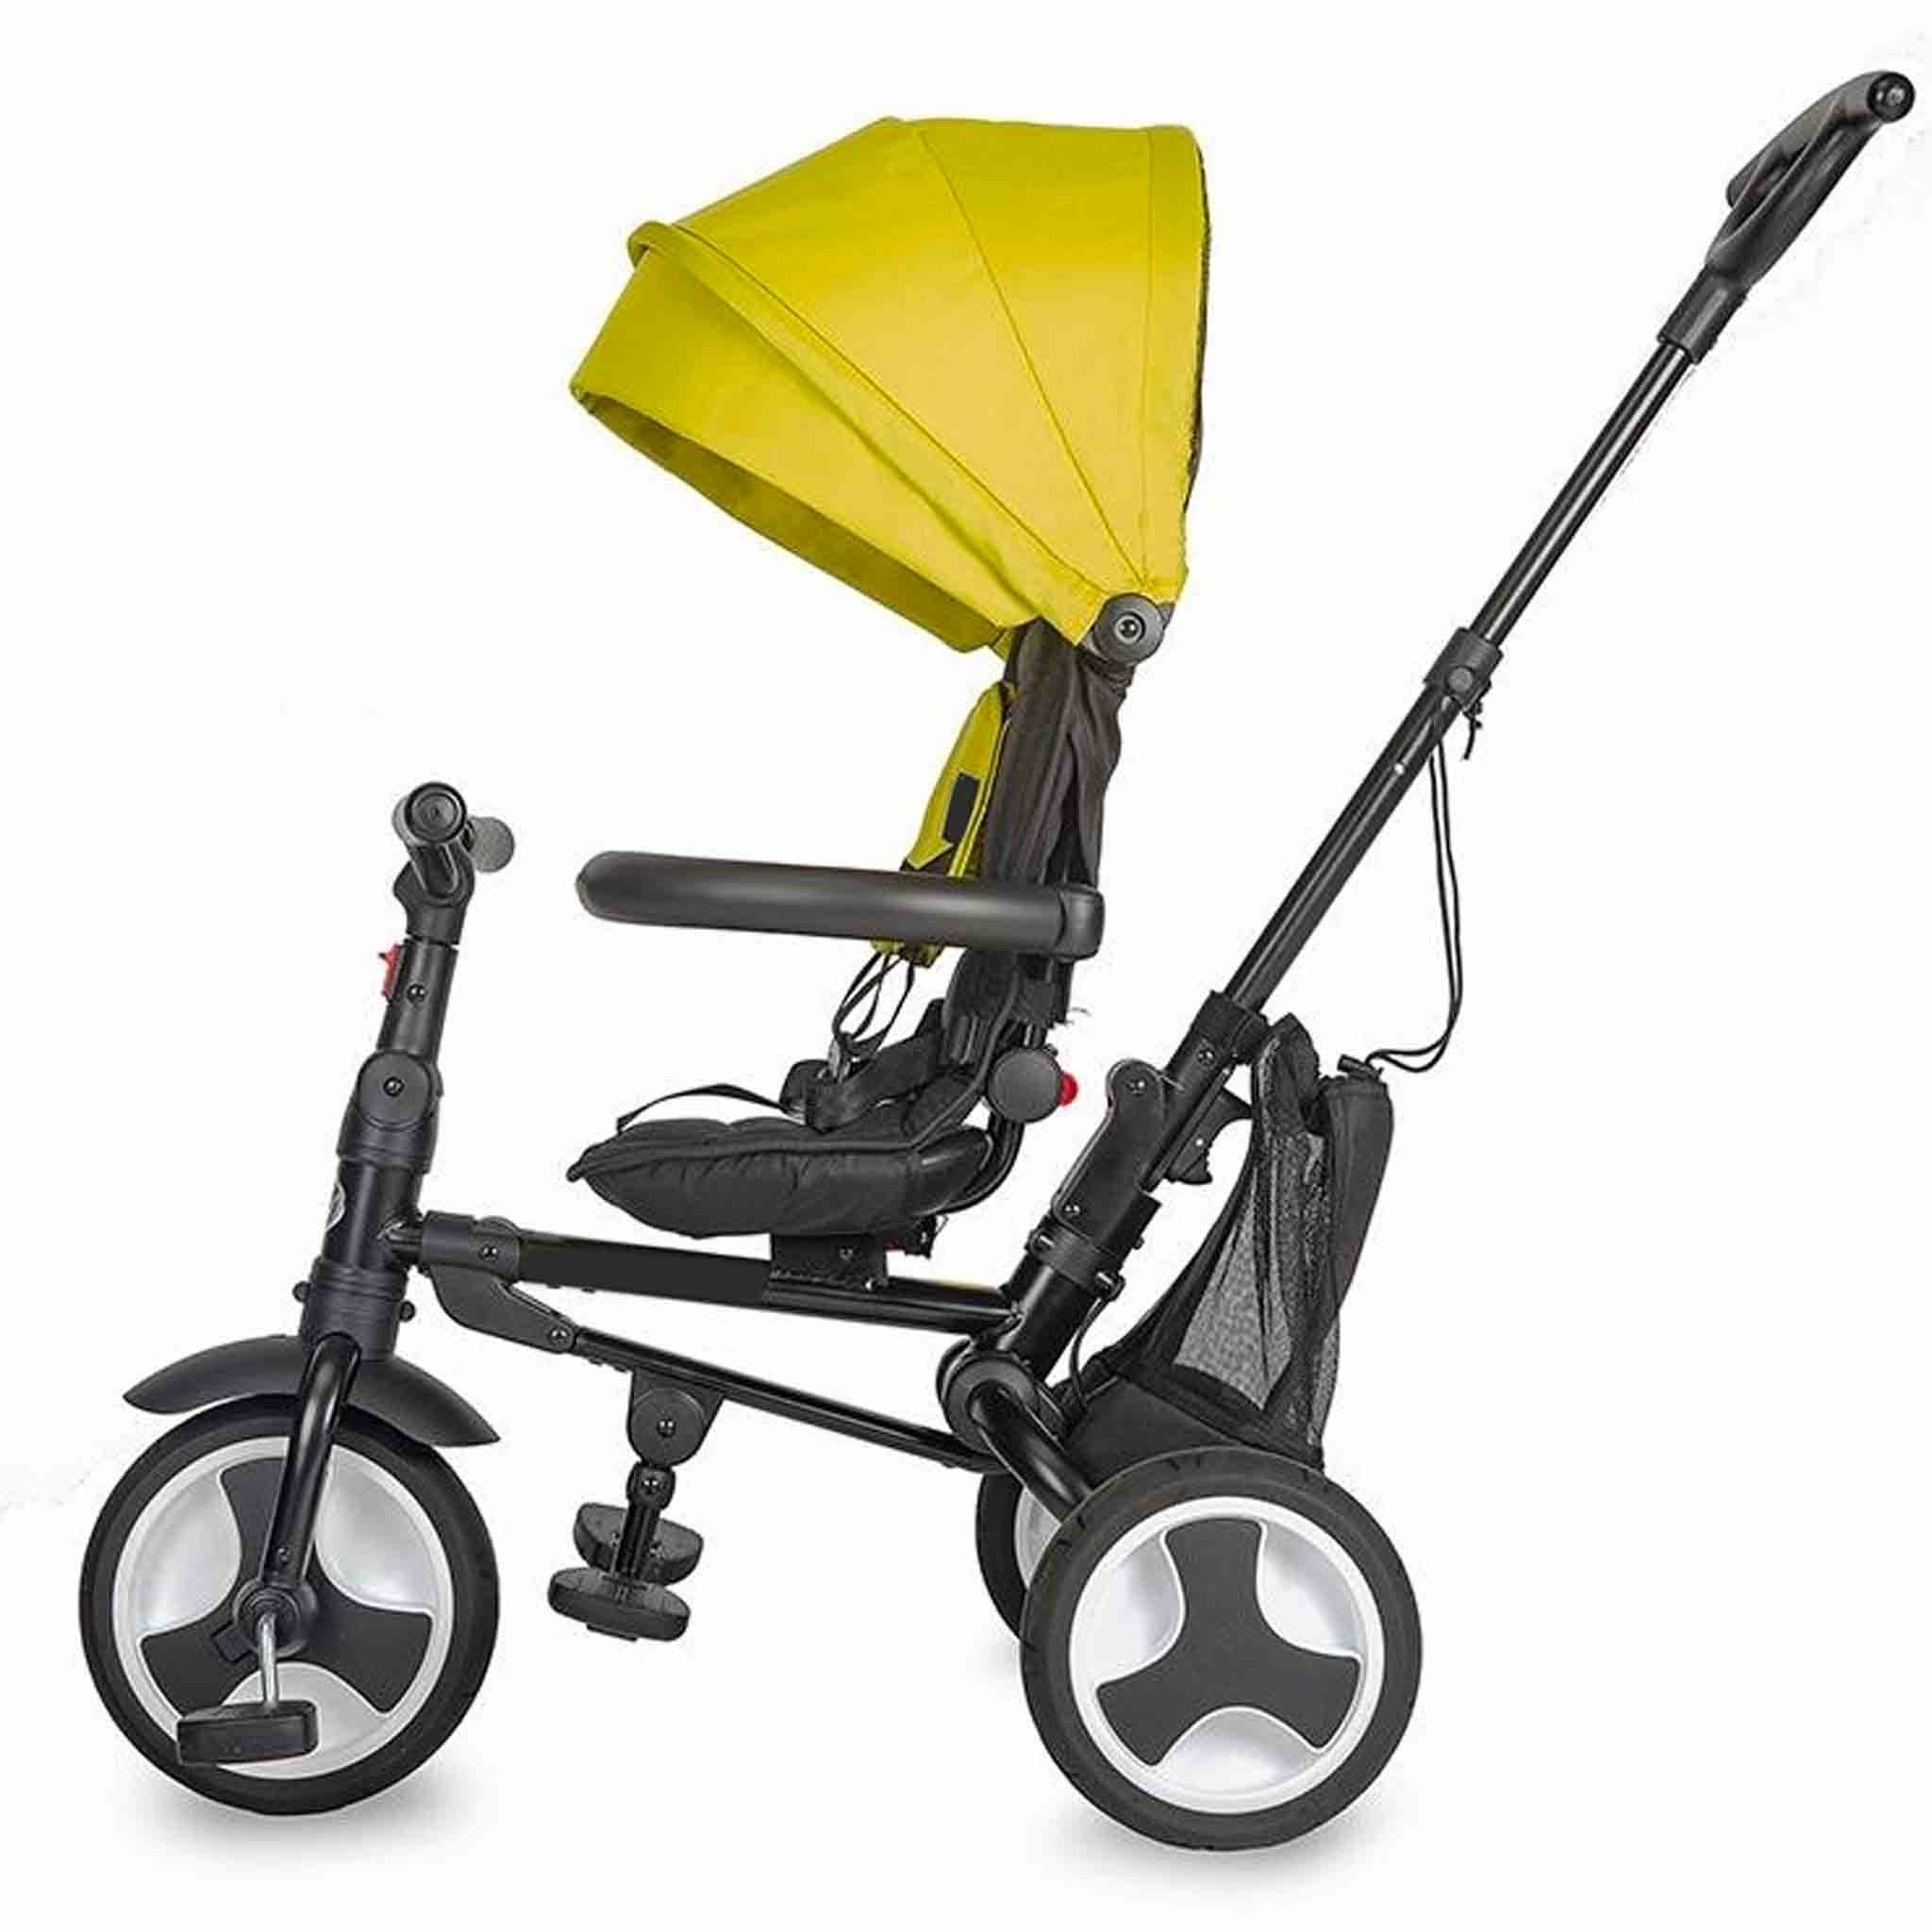 triciclo-spettro-coccolle-spectra-pieghevole-6-in-1-reclinabile-girevole-fronte-strada-mamma-bambino-ruote-giallo-lato.jpg